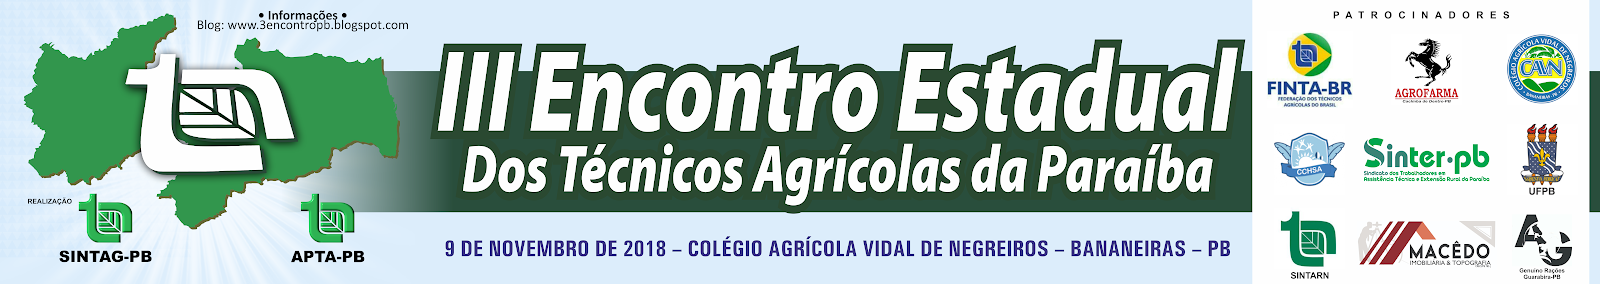 III Encontro Estadual dos Técnicos Agrícolas da Paraíba